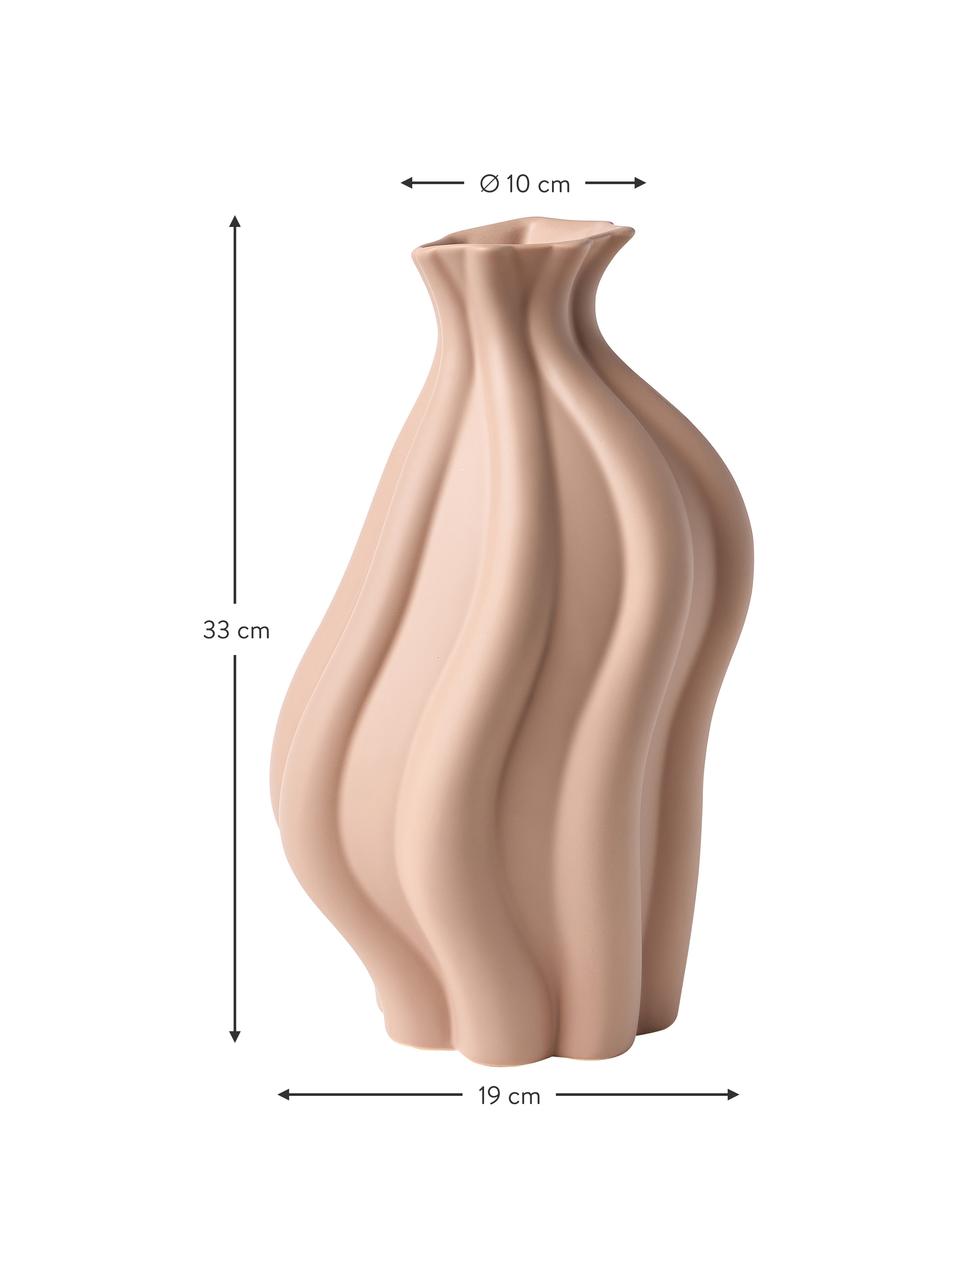 Vase en céramique Blom, Céramique, Couleur saumon, haut. 33 cm